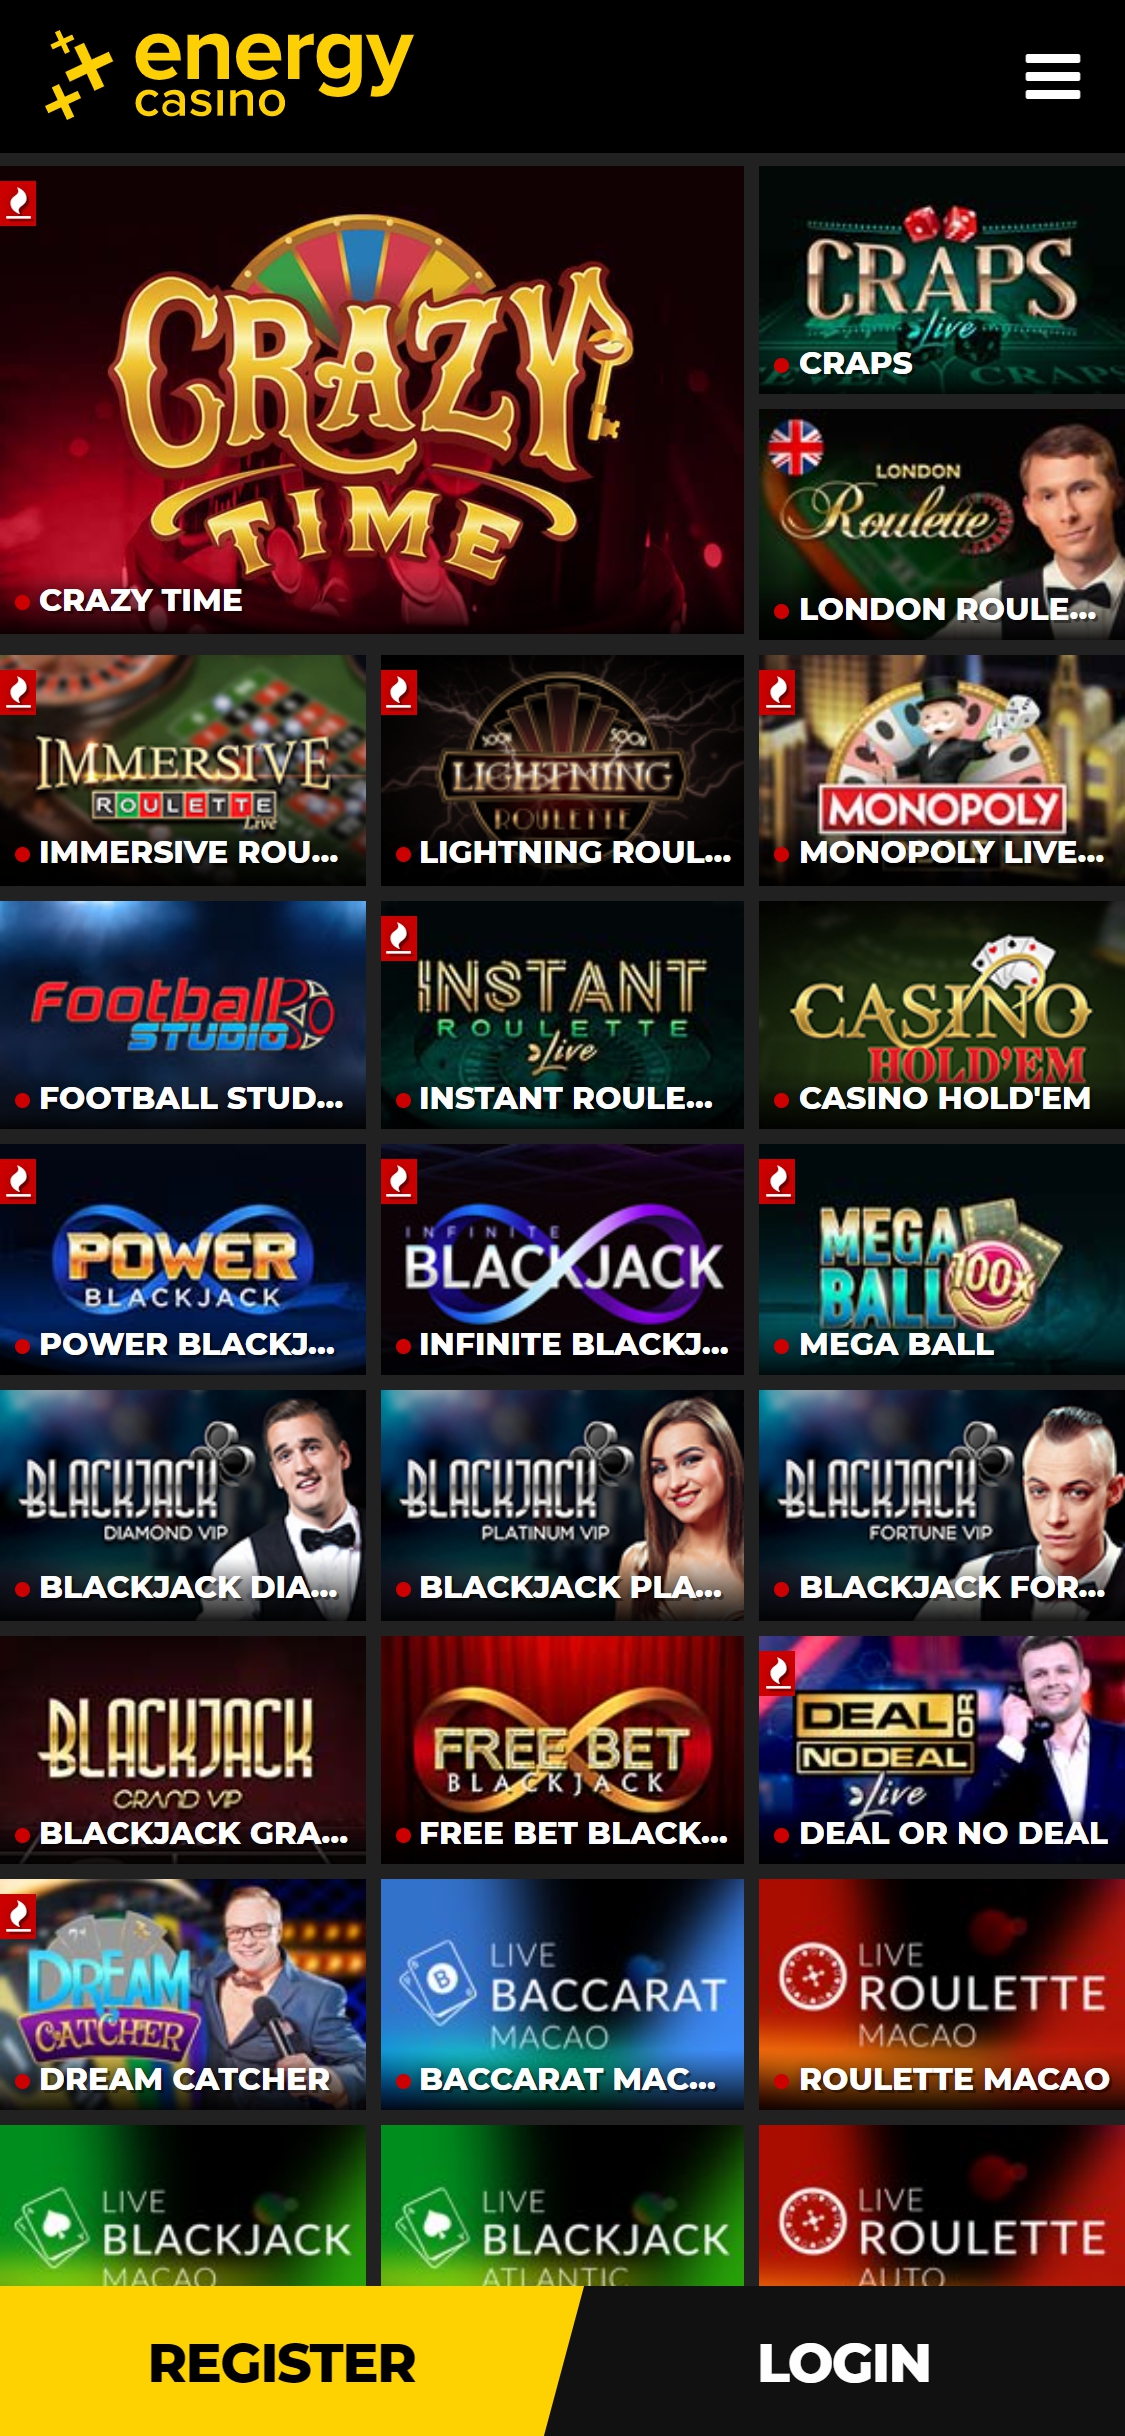 Casino Club Mobile Live Dealer Games Review